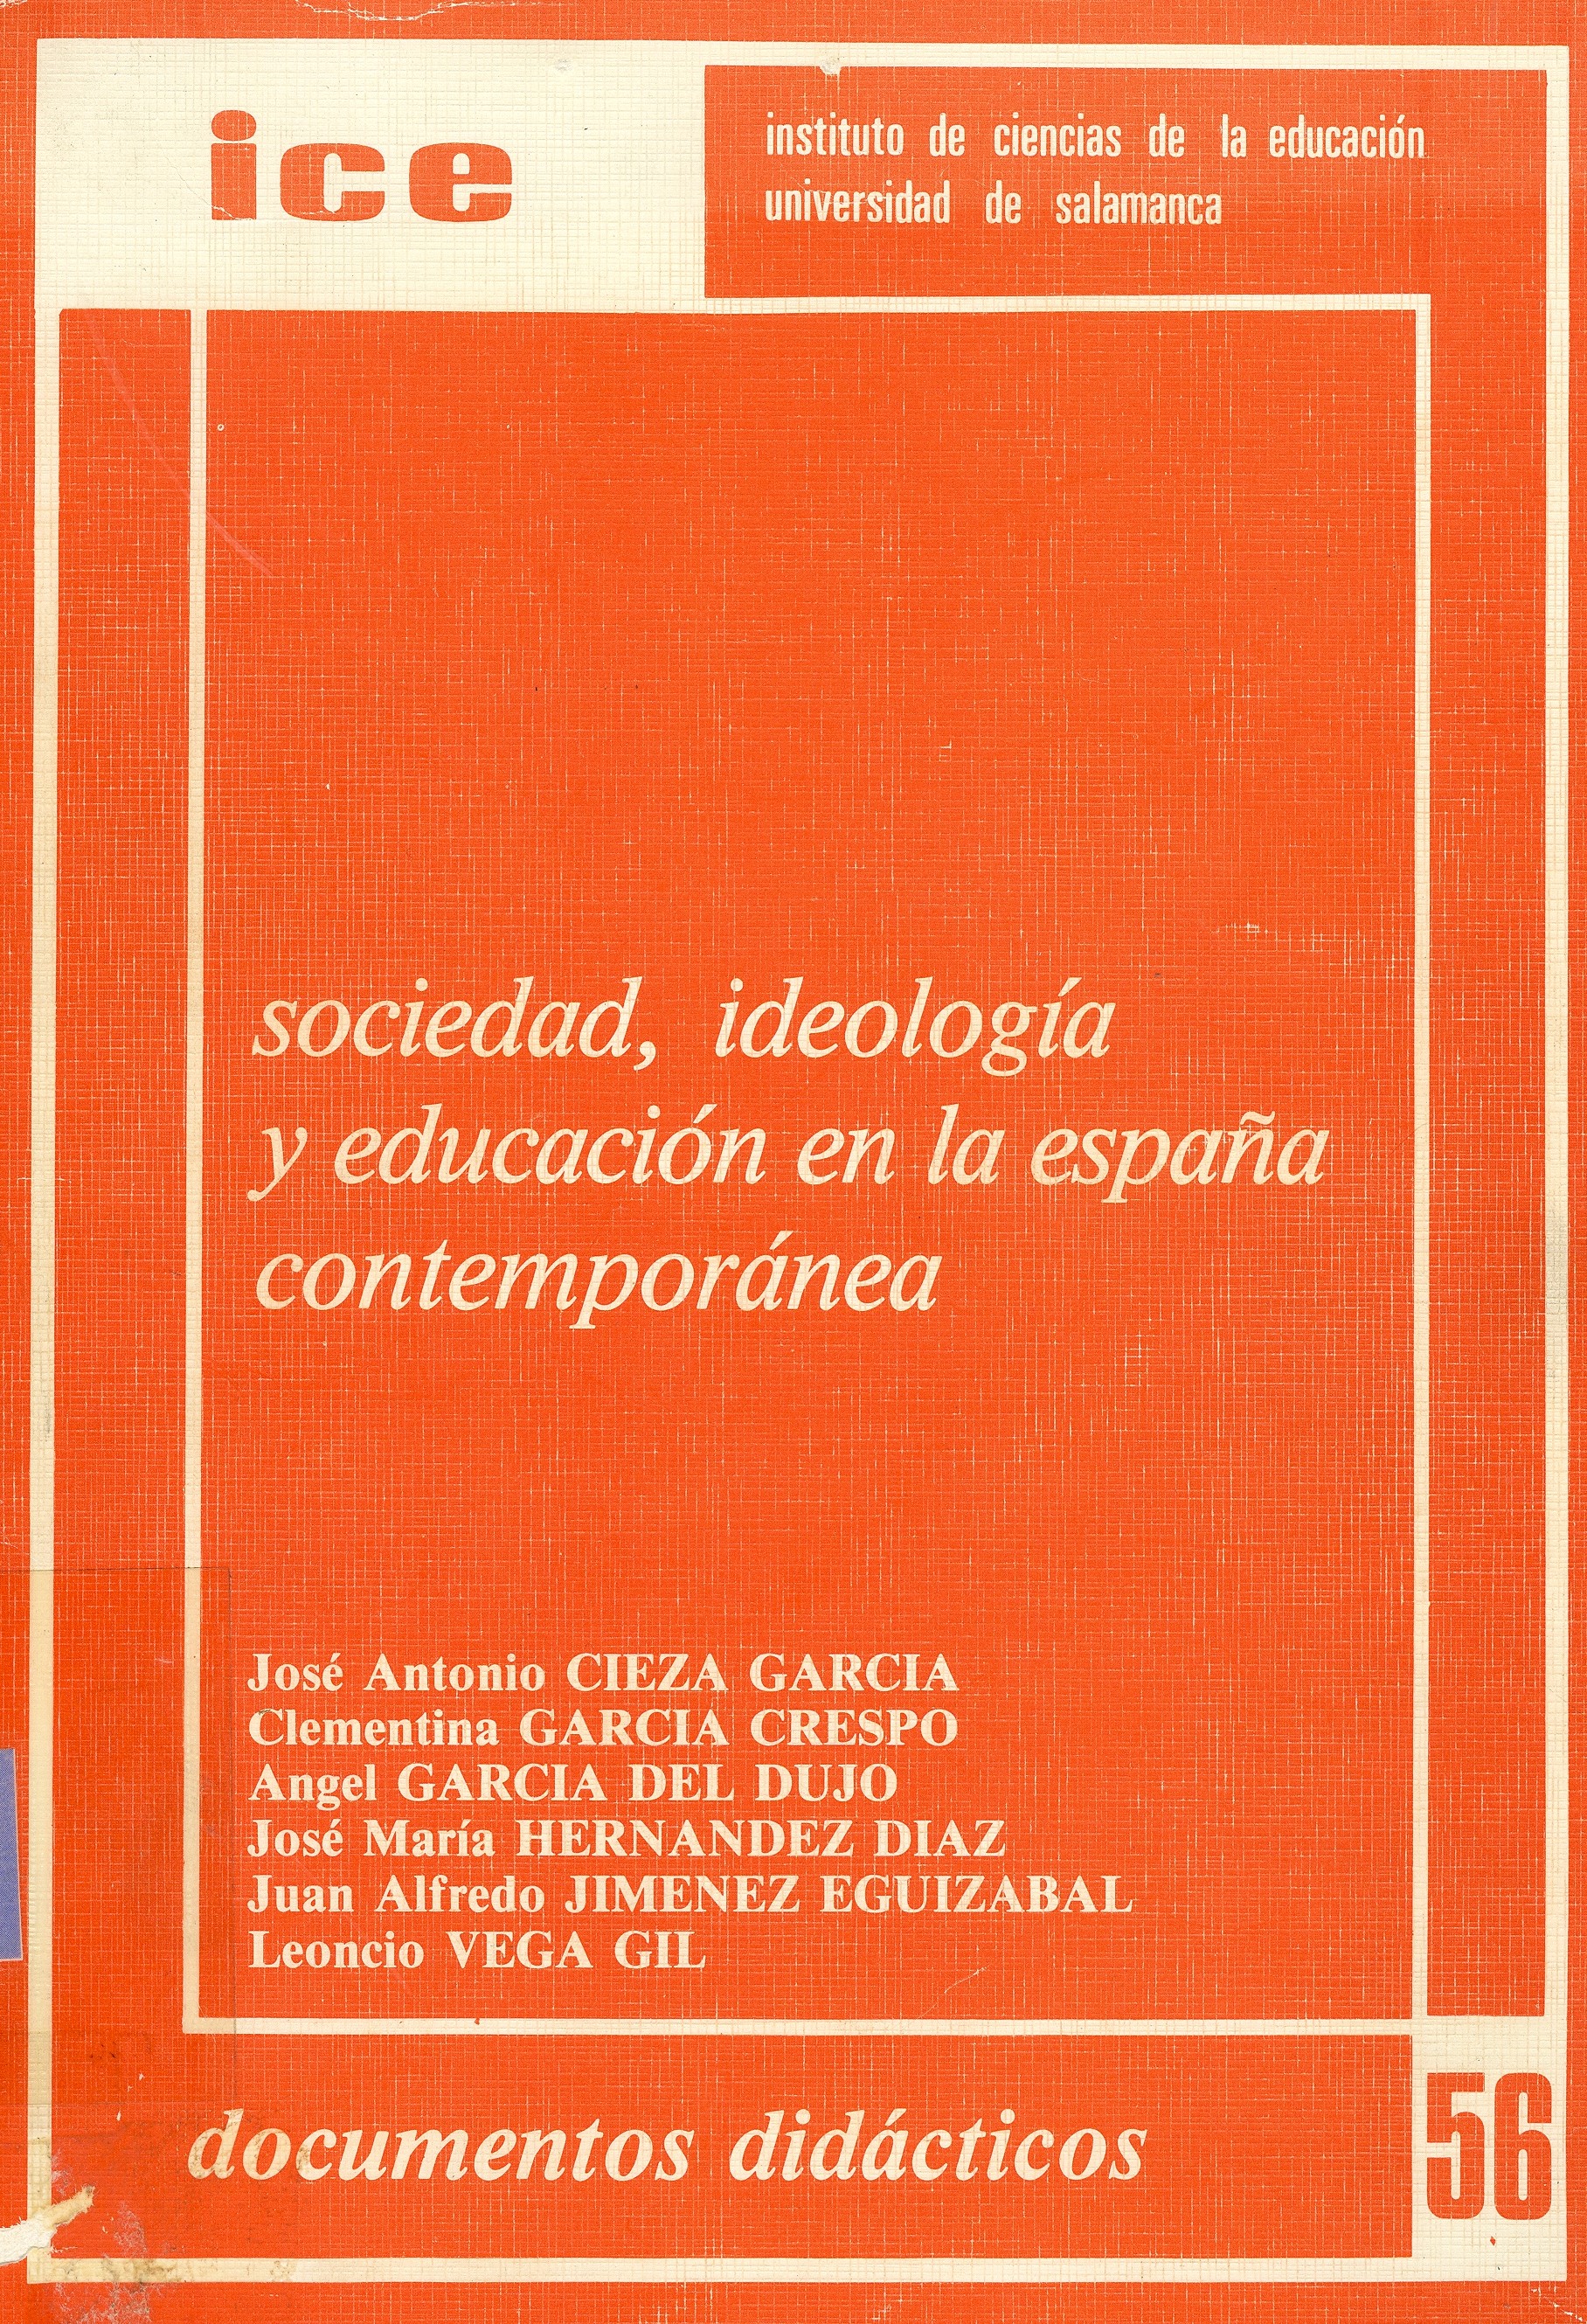 Imagen de portada del libro Sociedad, ideología y educación en la España contemporánea